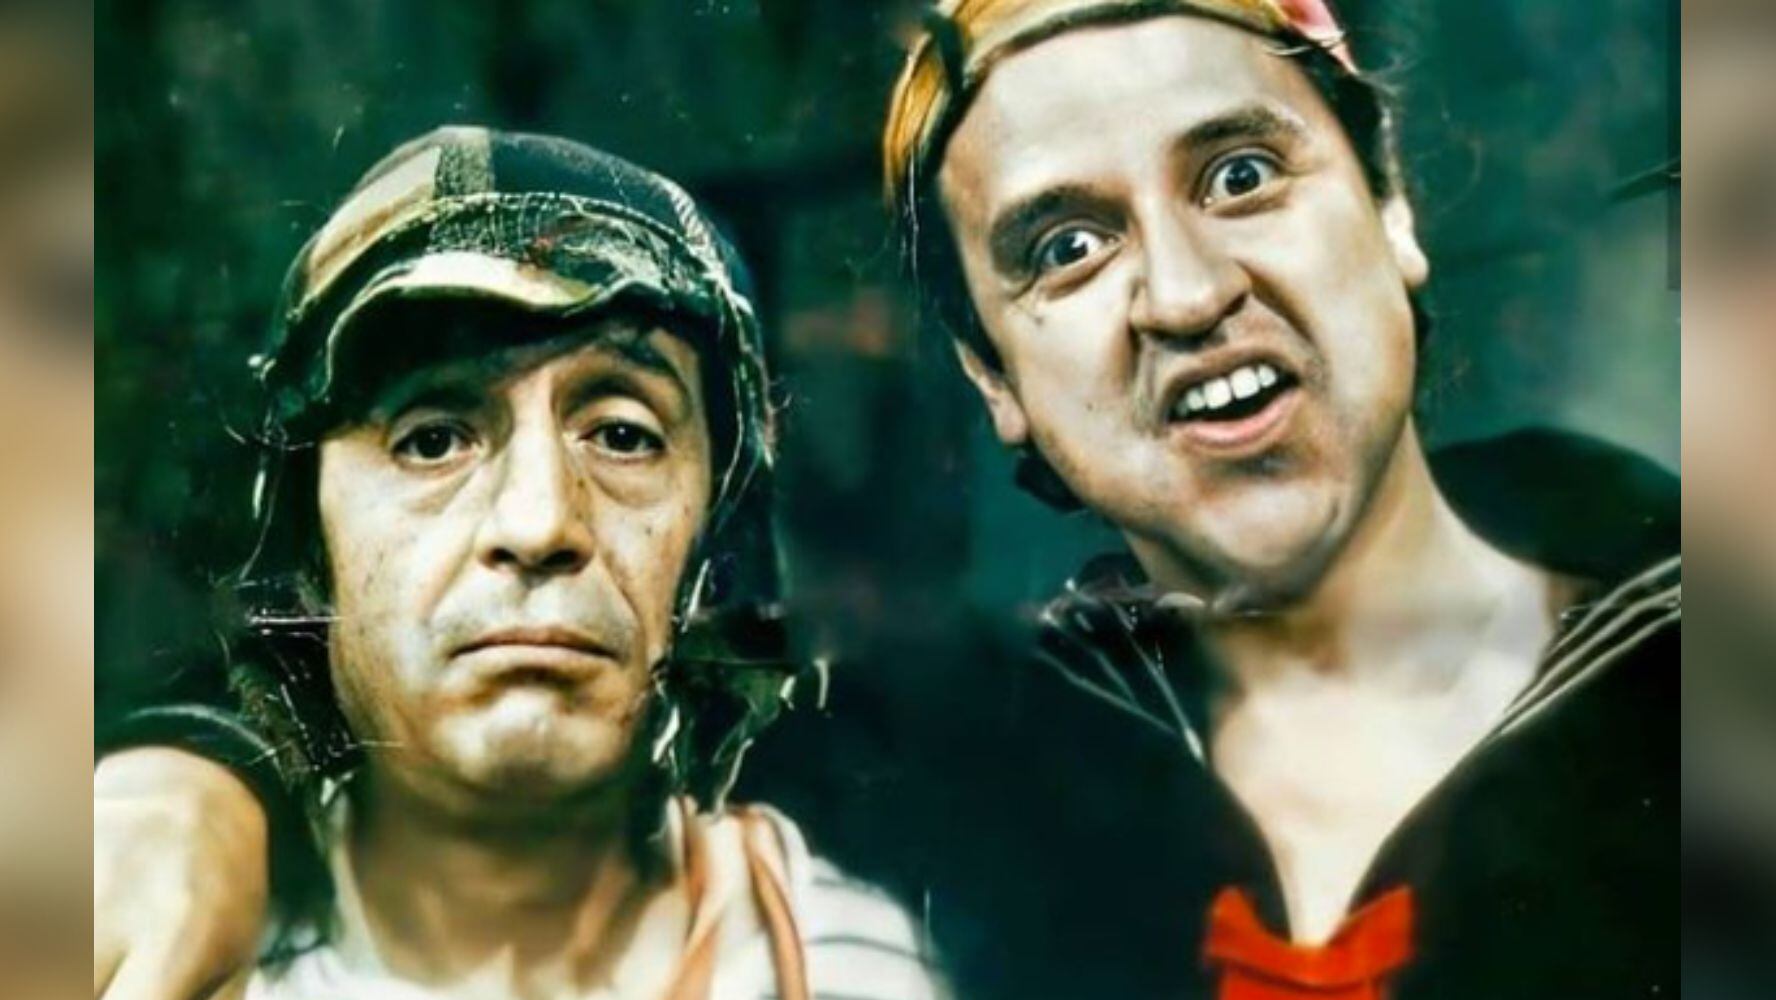 Roberto Gómez Bolaños en su papel de El Chavo del 8 y Carlos Villagrán como 'Kiko'. (Foto: Instagram @carlos_kiko1)